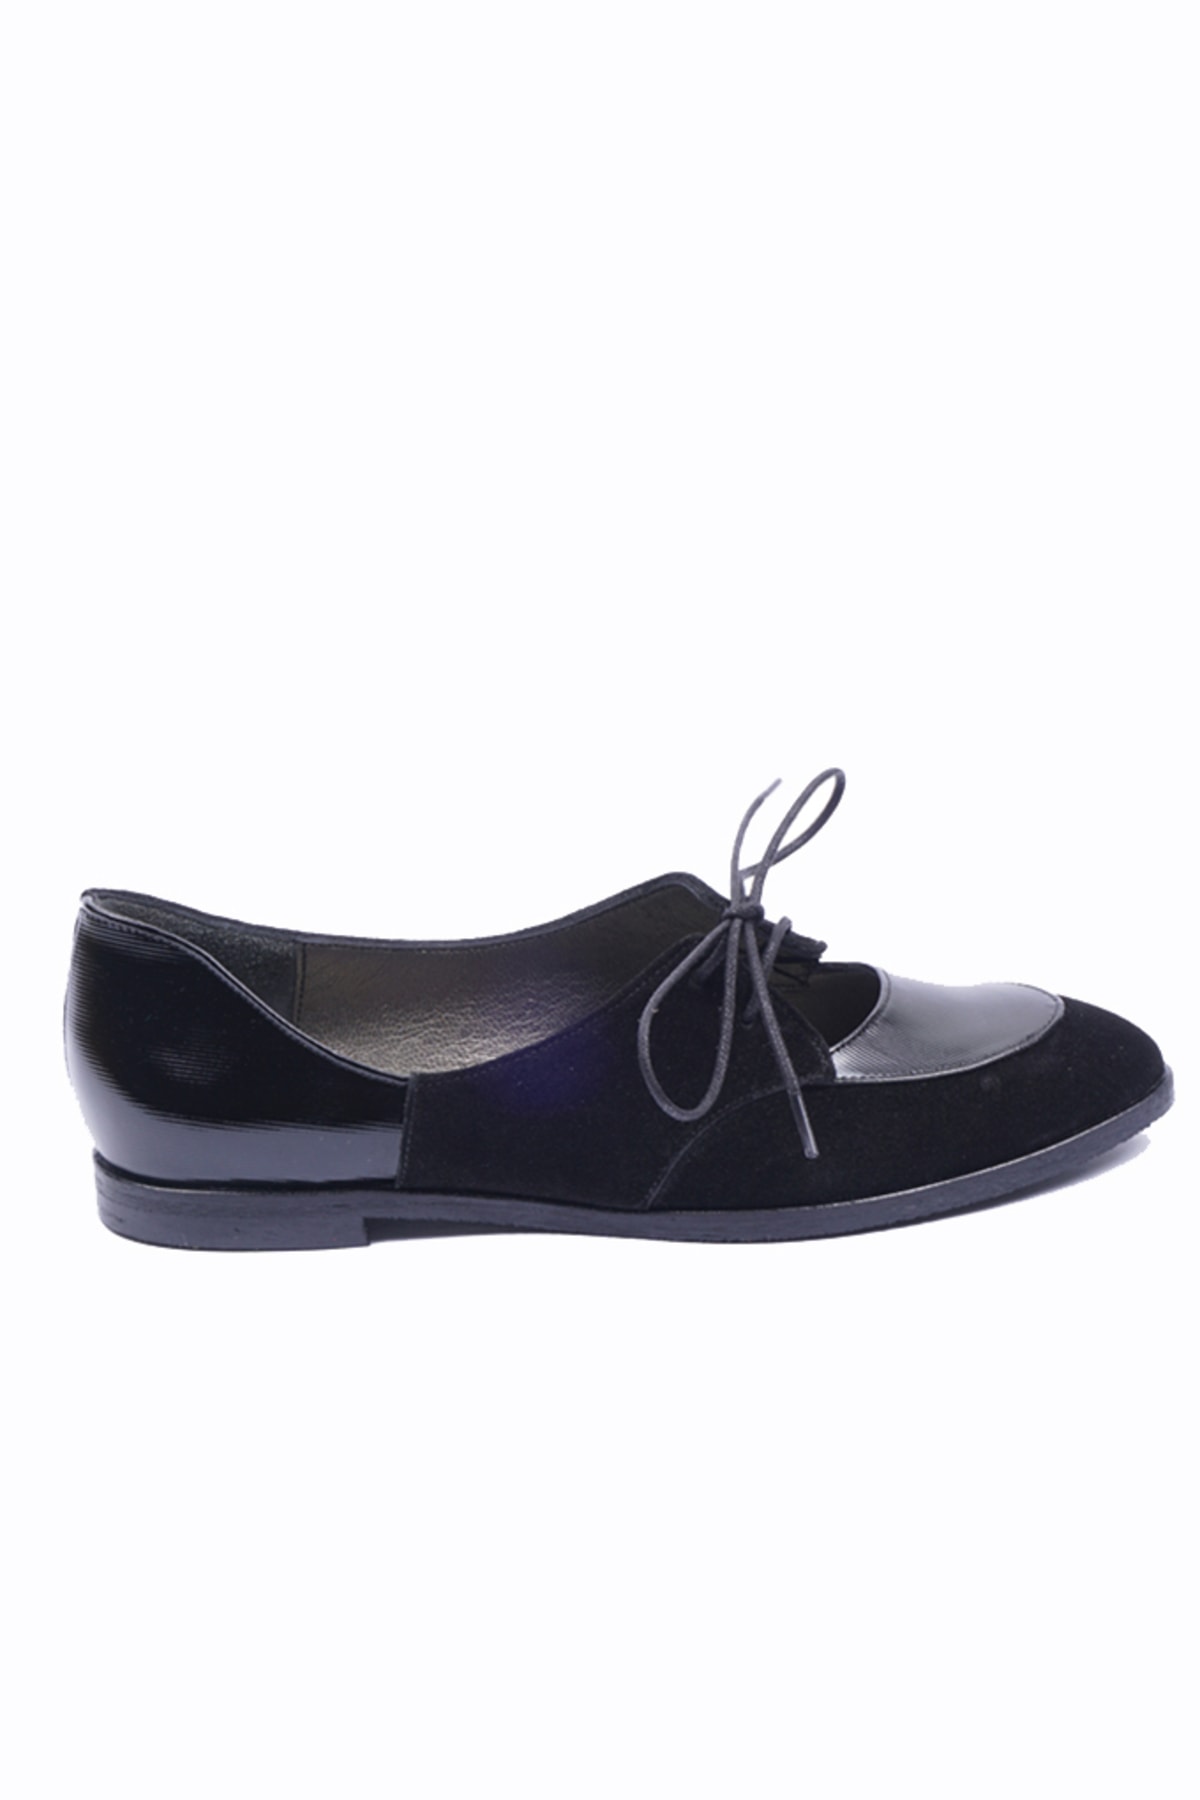 Lo Mejor Shoes Wenty Deri Özel Tasarım Kadın Babet Ayakkabı - Renk Süet Siyah OH10824